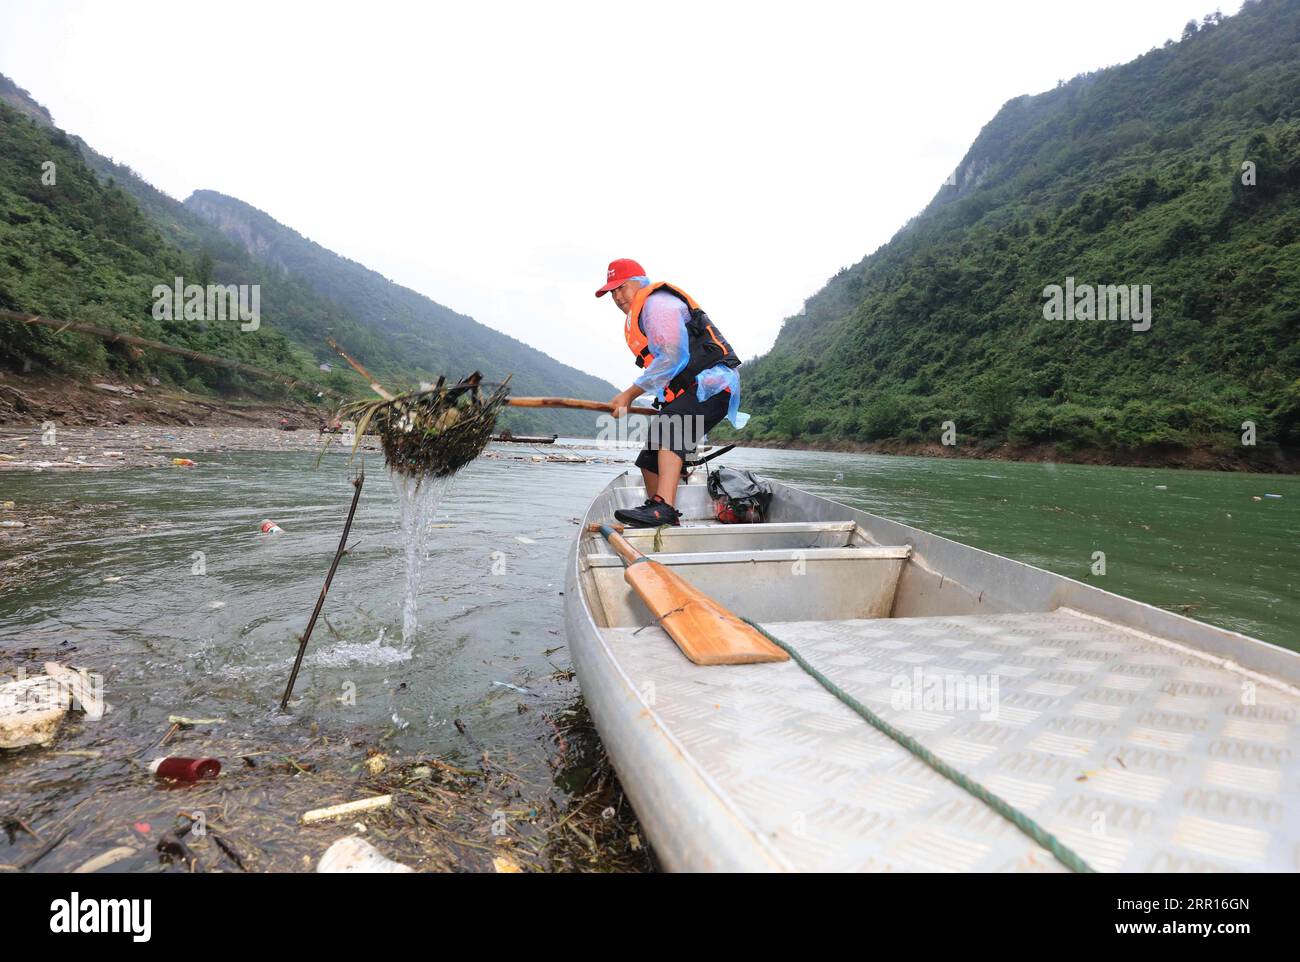 200906 -- ZHANGJIAJIE, 6 settembre 2020 -- Un abitante del villaggio ripulisce la flotage dal fiume Maoyan nel distretto di Yongding della città di Zhangjiajie, provincia centrale di Hunan della Cina, 6 settembre 2020. La città ha organizzato gente per ripulire regolarmente il fiume per mantenere il fiume senza ostacoli. Foto di /Xinhua CHINA-HUNAN-ZHANGJIAJIE-RIVER-CLEARING WuxYongbing PUBLICATIONxNOTxINxCHN Foto Stock